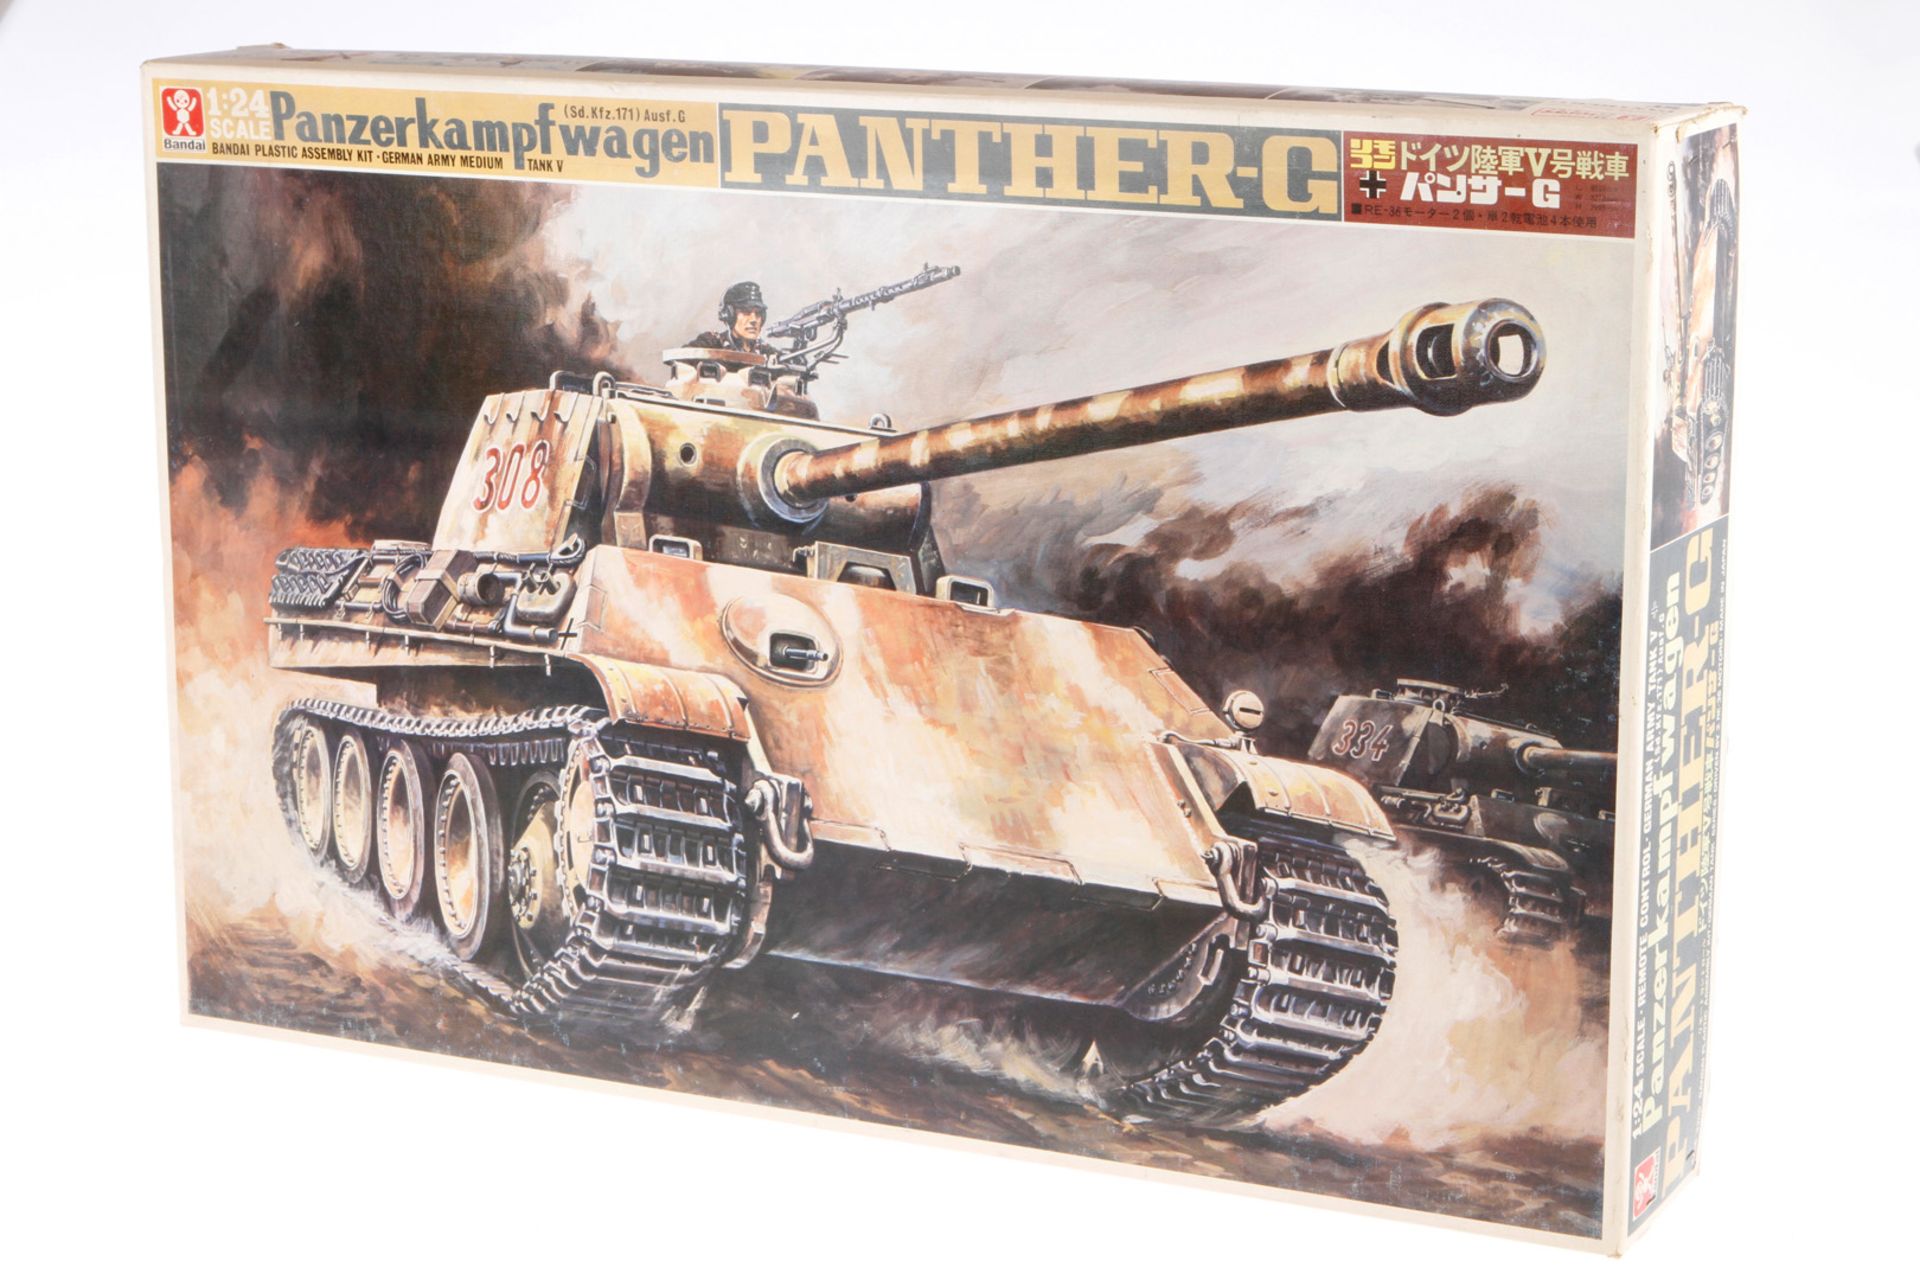 Bandai Bausatz Panzerkampfwagen "Panther-G" 4256-3200, Maßstab 1:24, wohl komplett, im leicht besch.